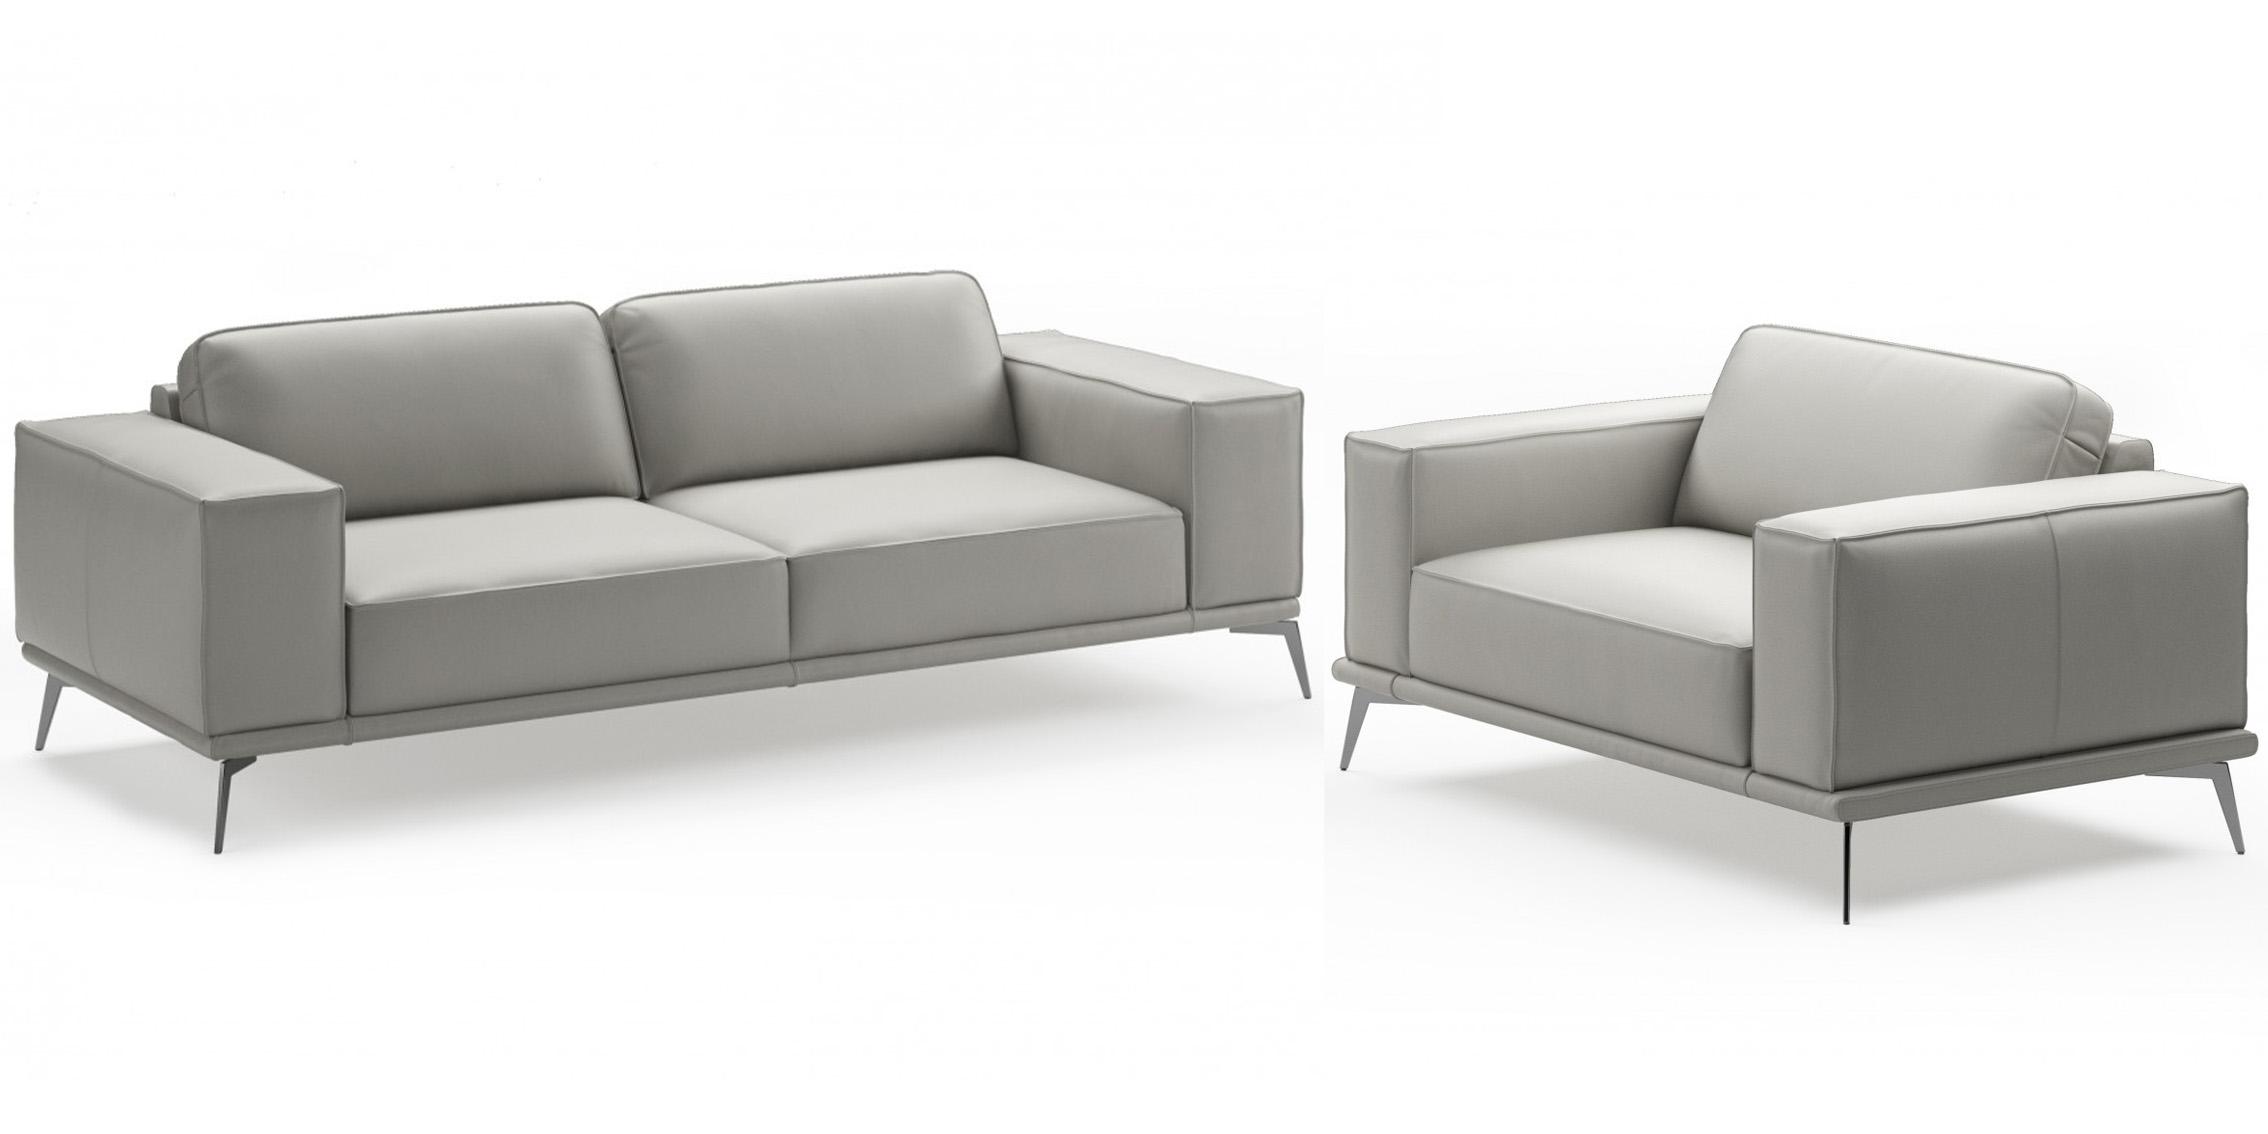 Contemporary, Modern Sofa Set VGCCSOHO-GRY-S VGCCSOHO-GRY-S-Set-2 in Light Grey Italian Leather